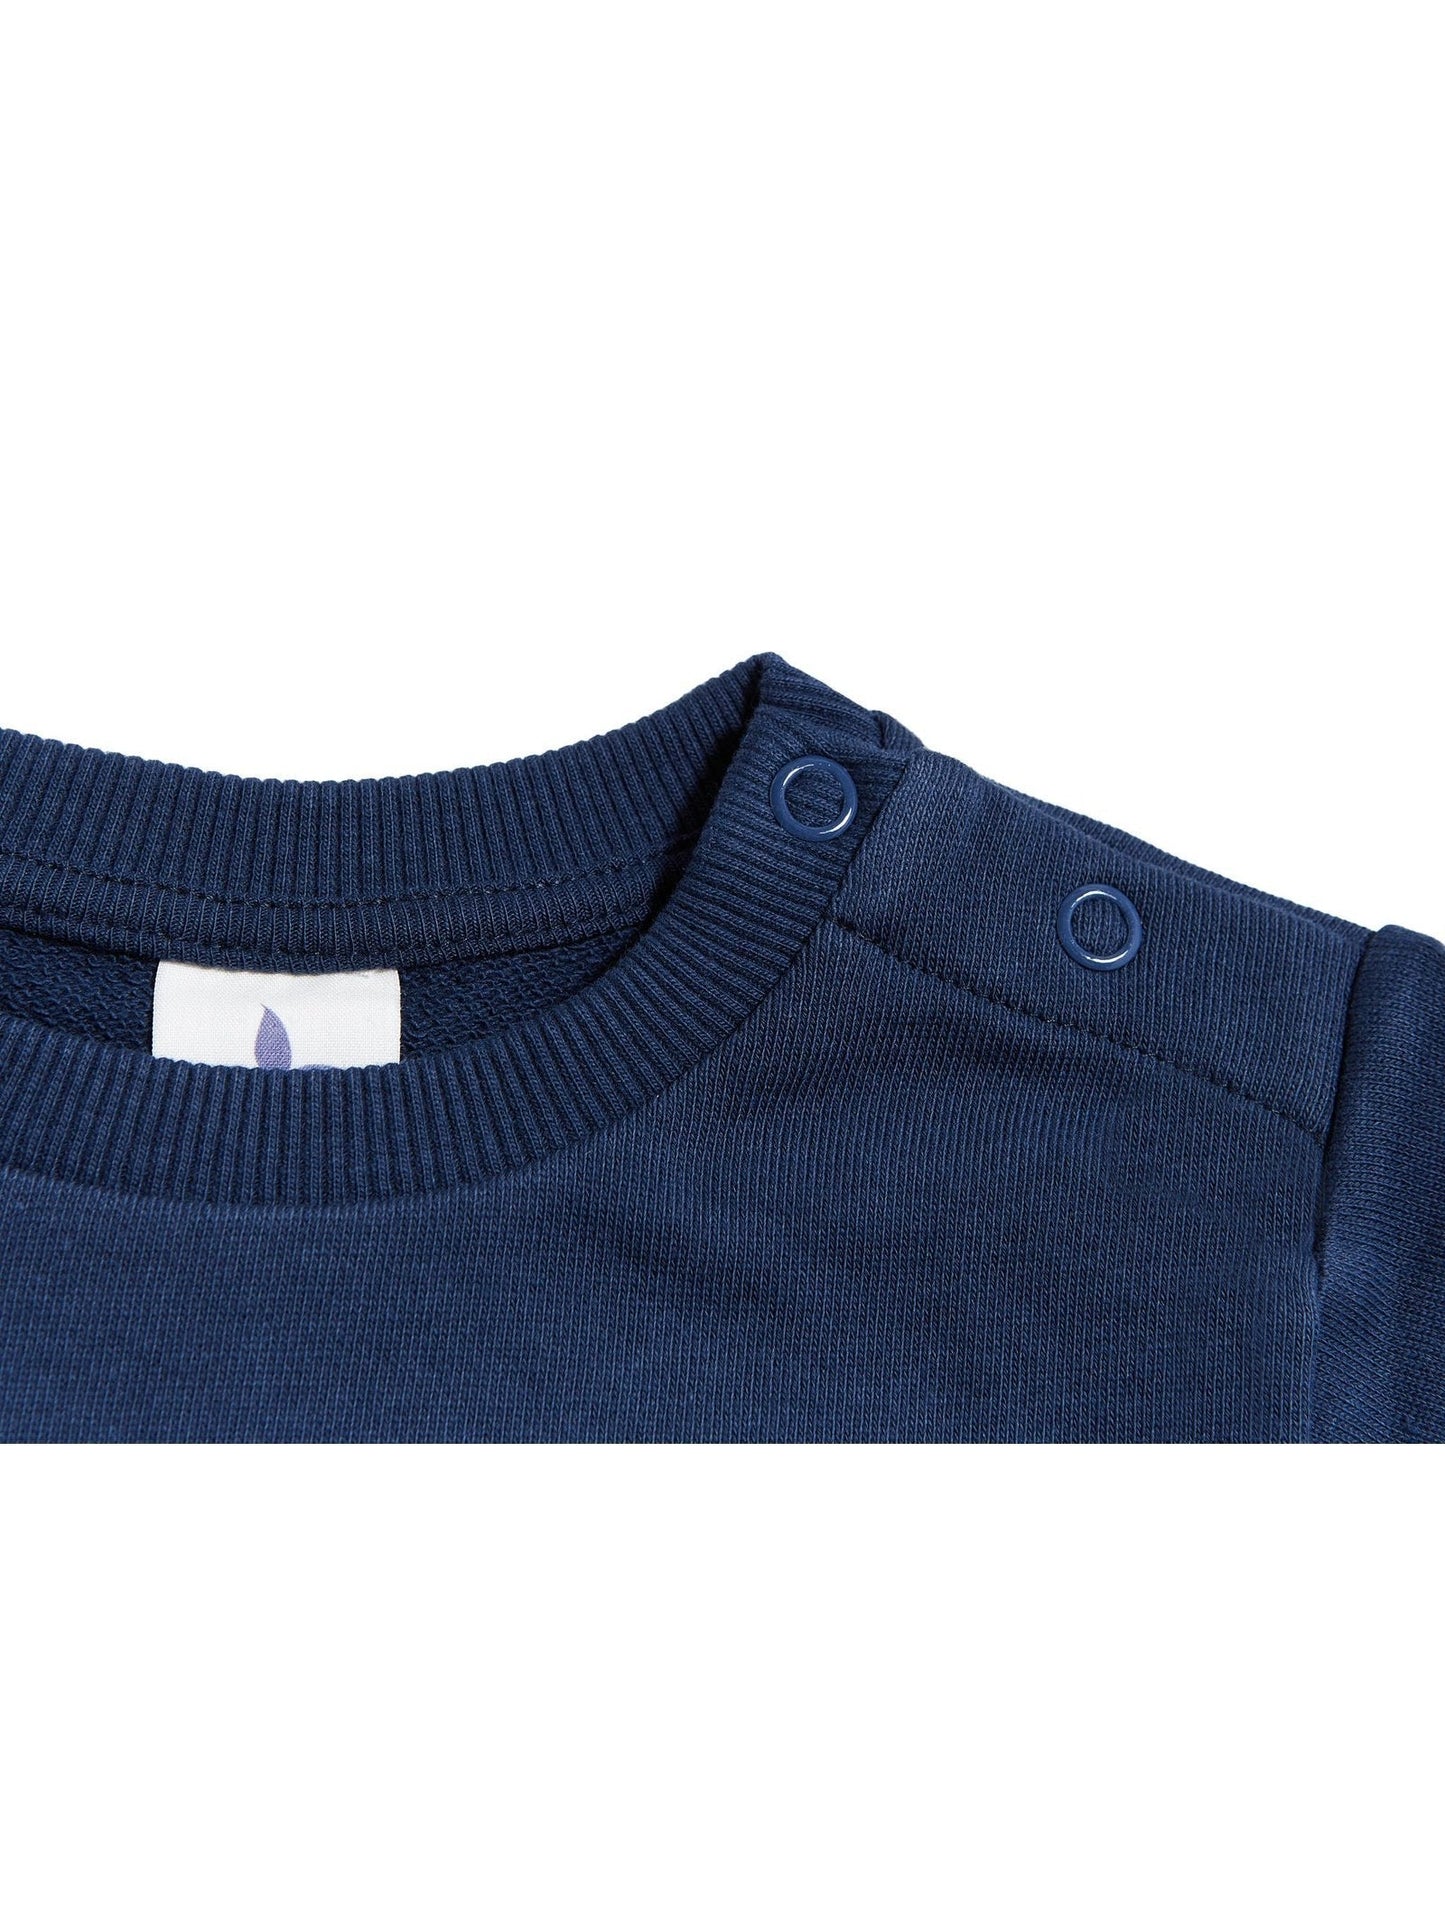 2025ID | Baby Sweatshirt - Indigo